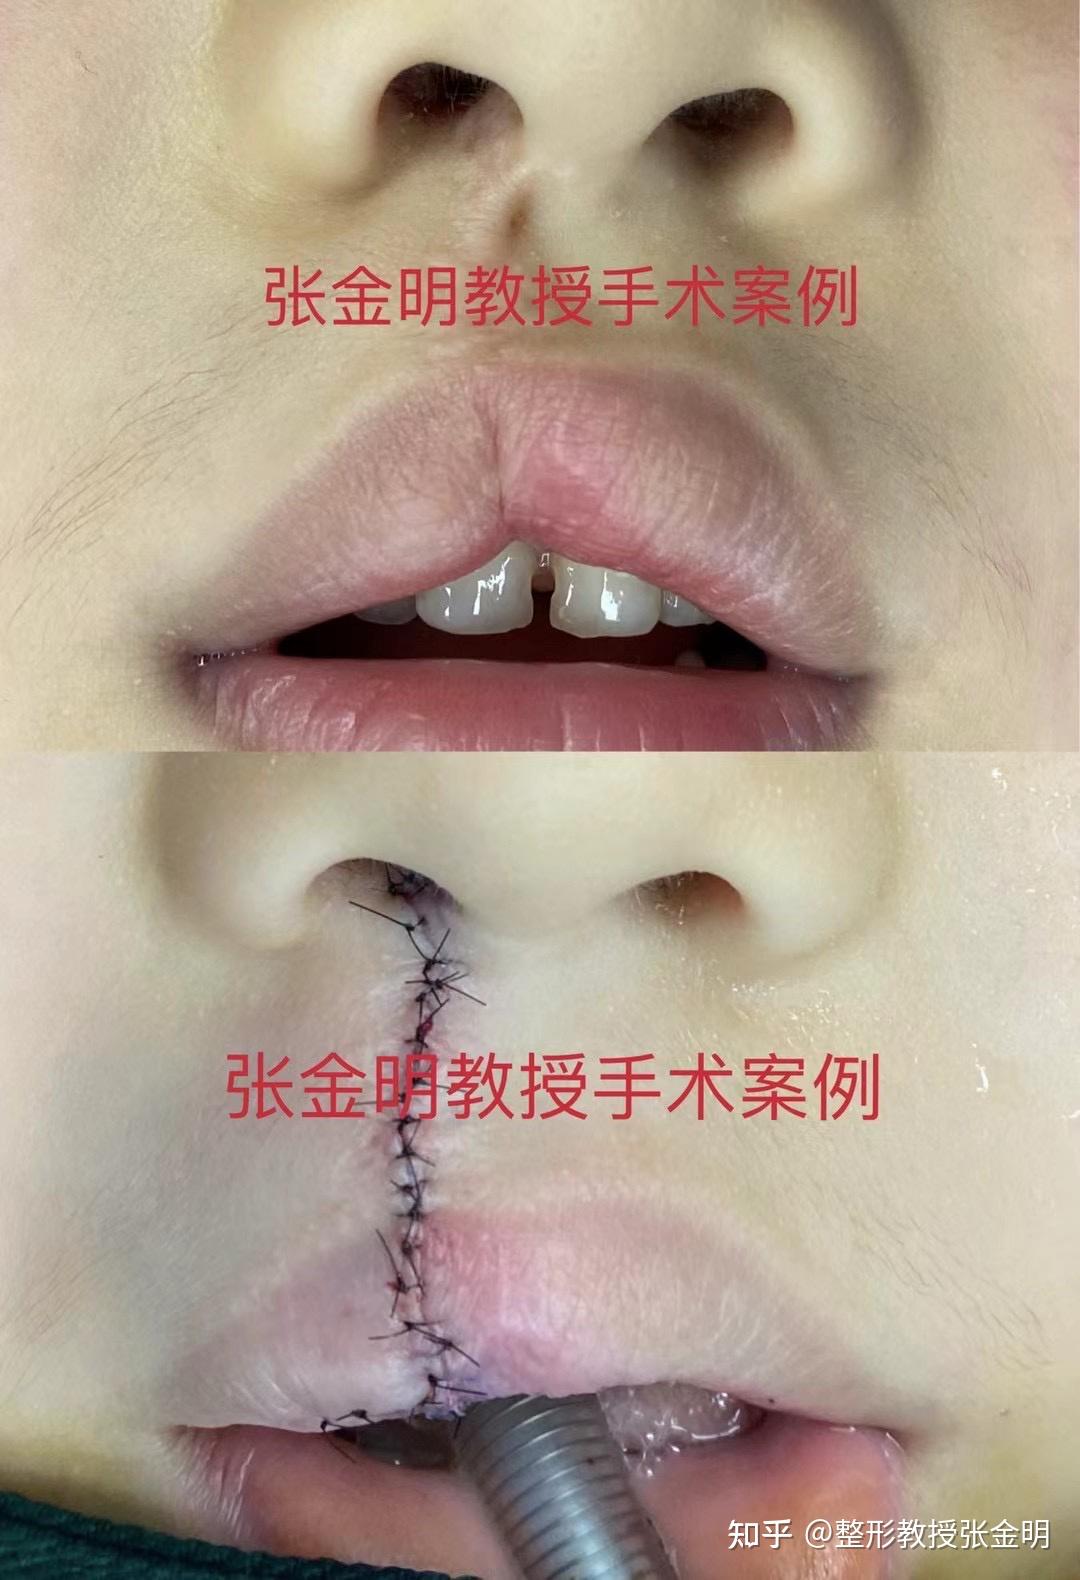 儿童唇腭裂手术需要注意什么?